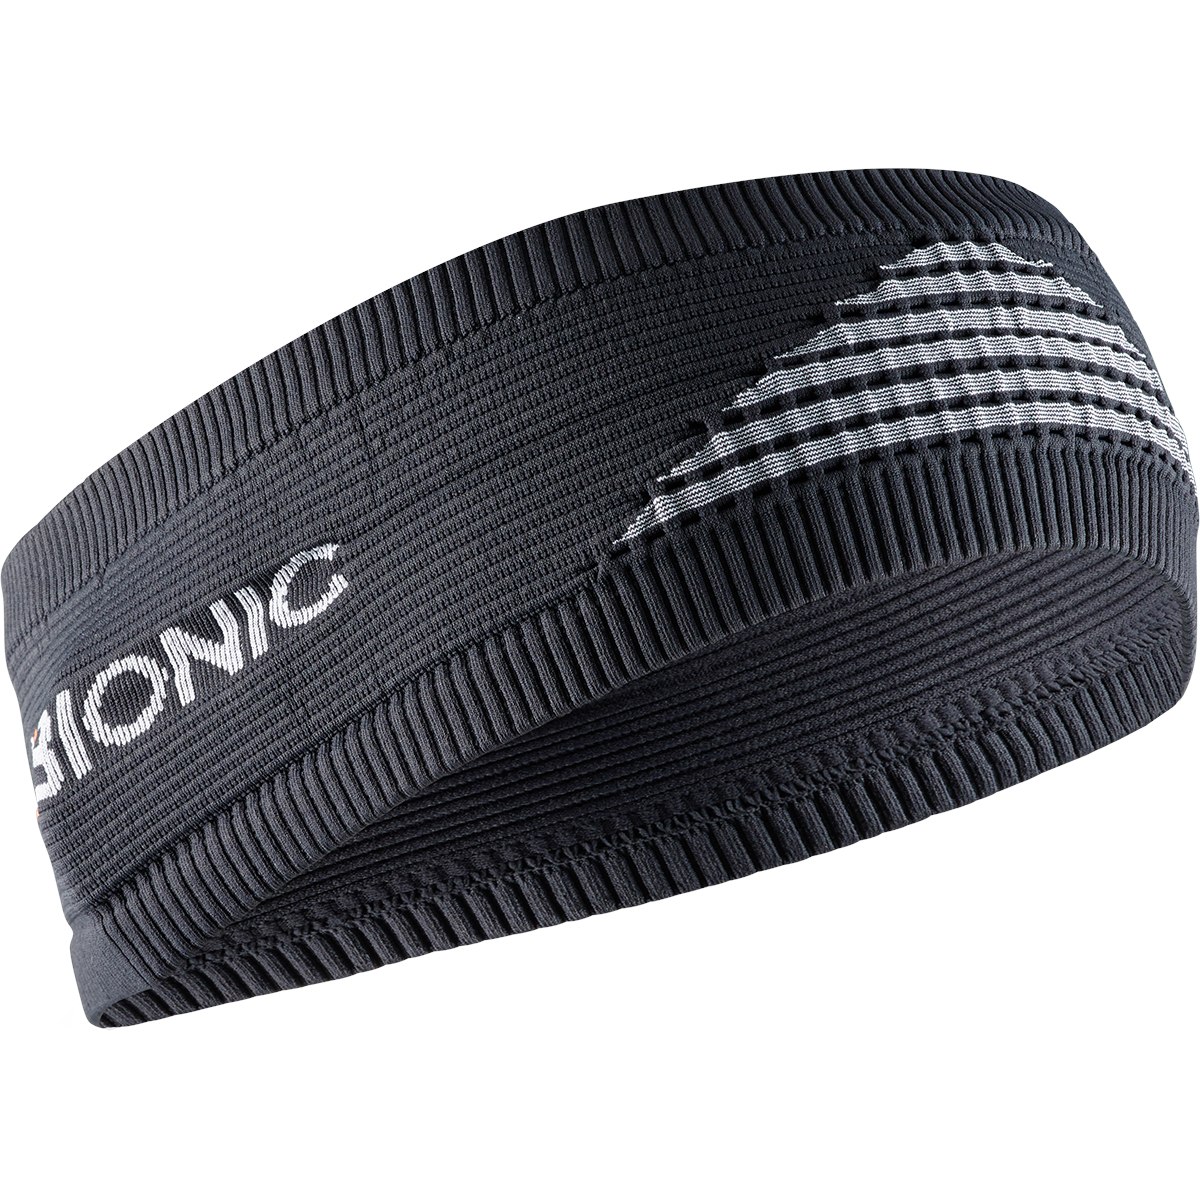 Produktbild von X-Bionic Stirnband 4.0 - charcoal/pearl grey